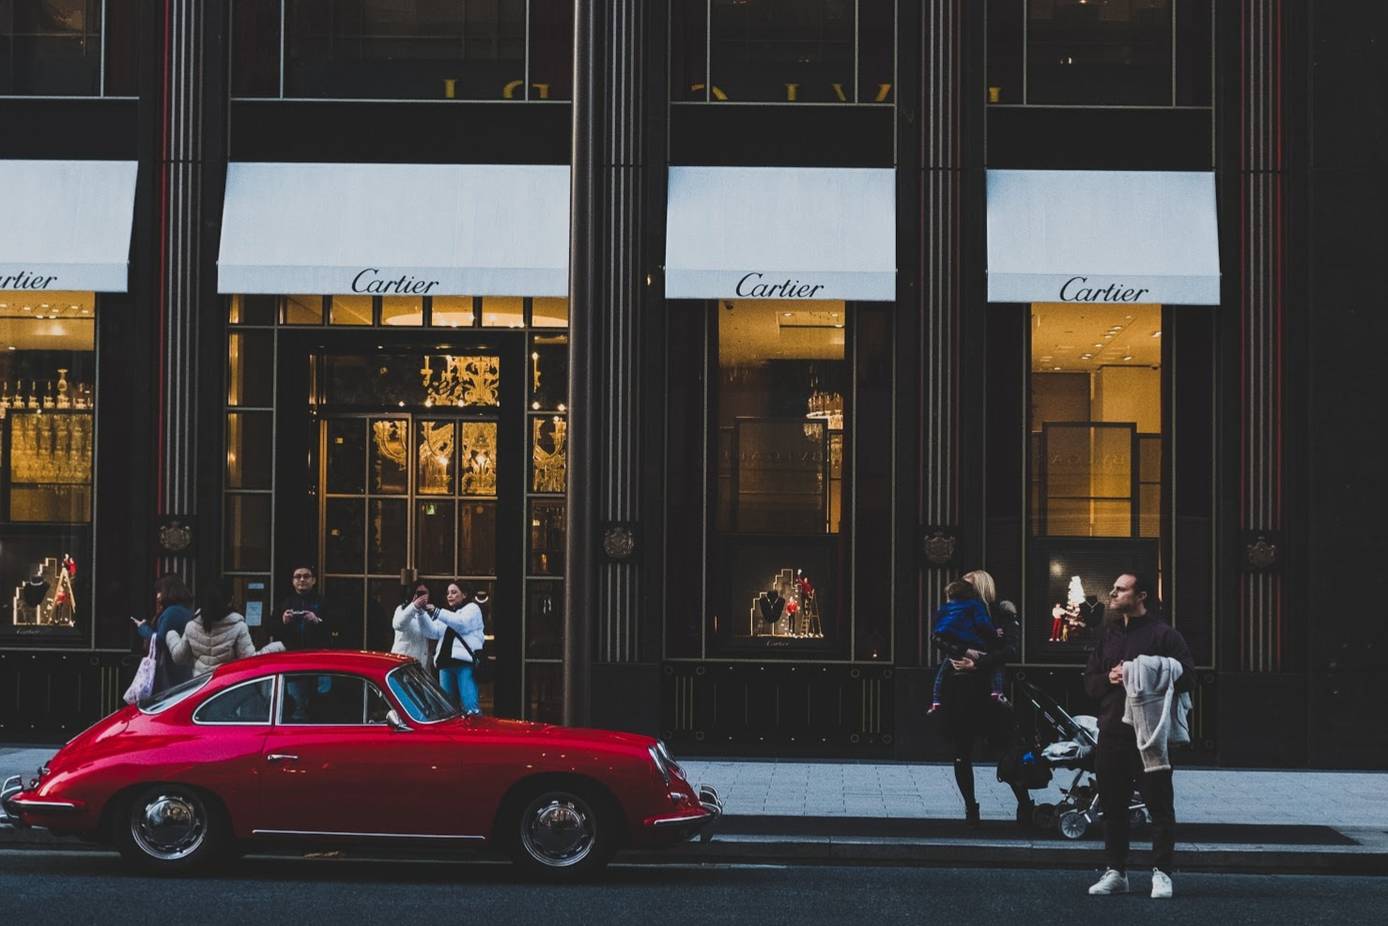 Pourquoi LVMH pourrait racheter le géant suisse du luxe Richemont (Cartier)  